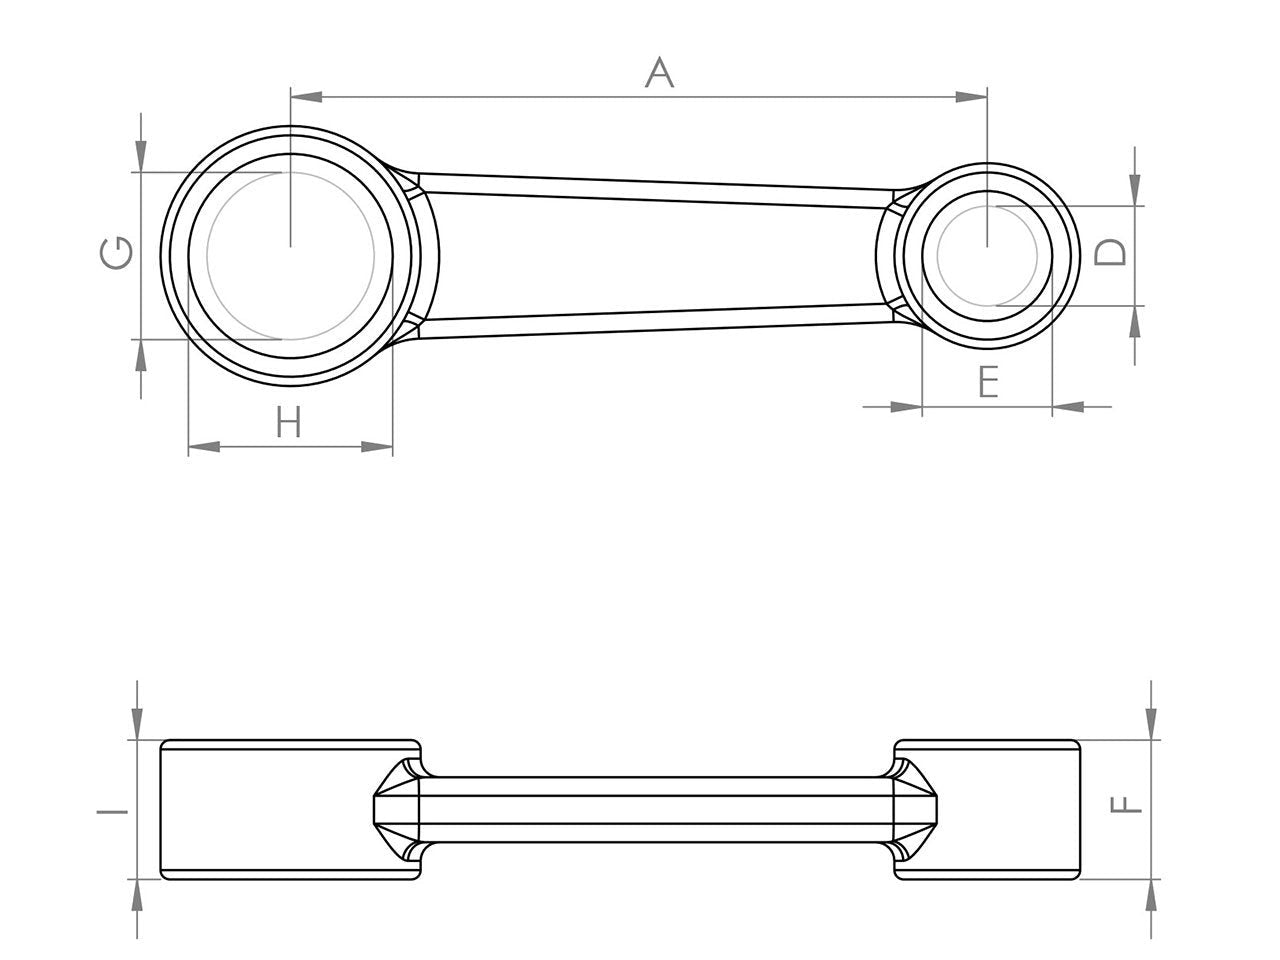 Zeichnung Barikit Pleuel für einen Honda CRF 250R Motor mit Bemaßung.